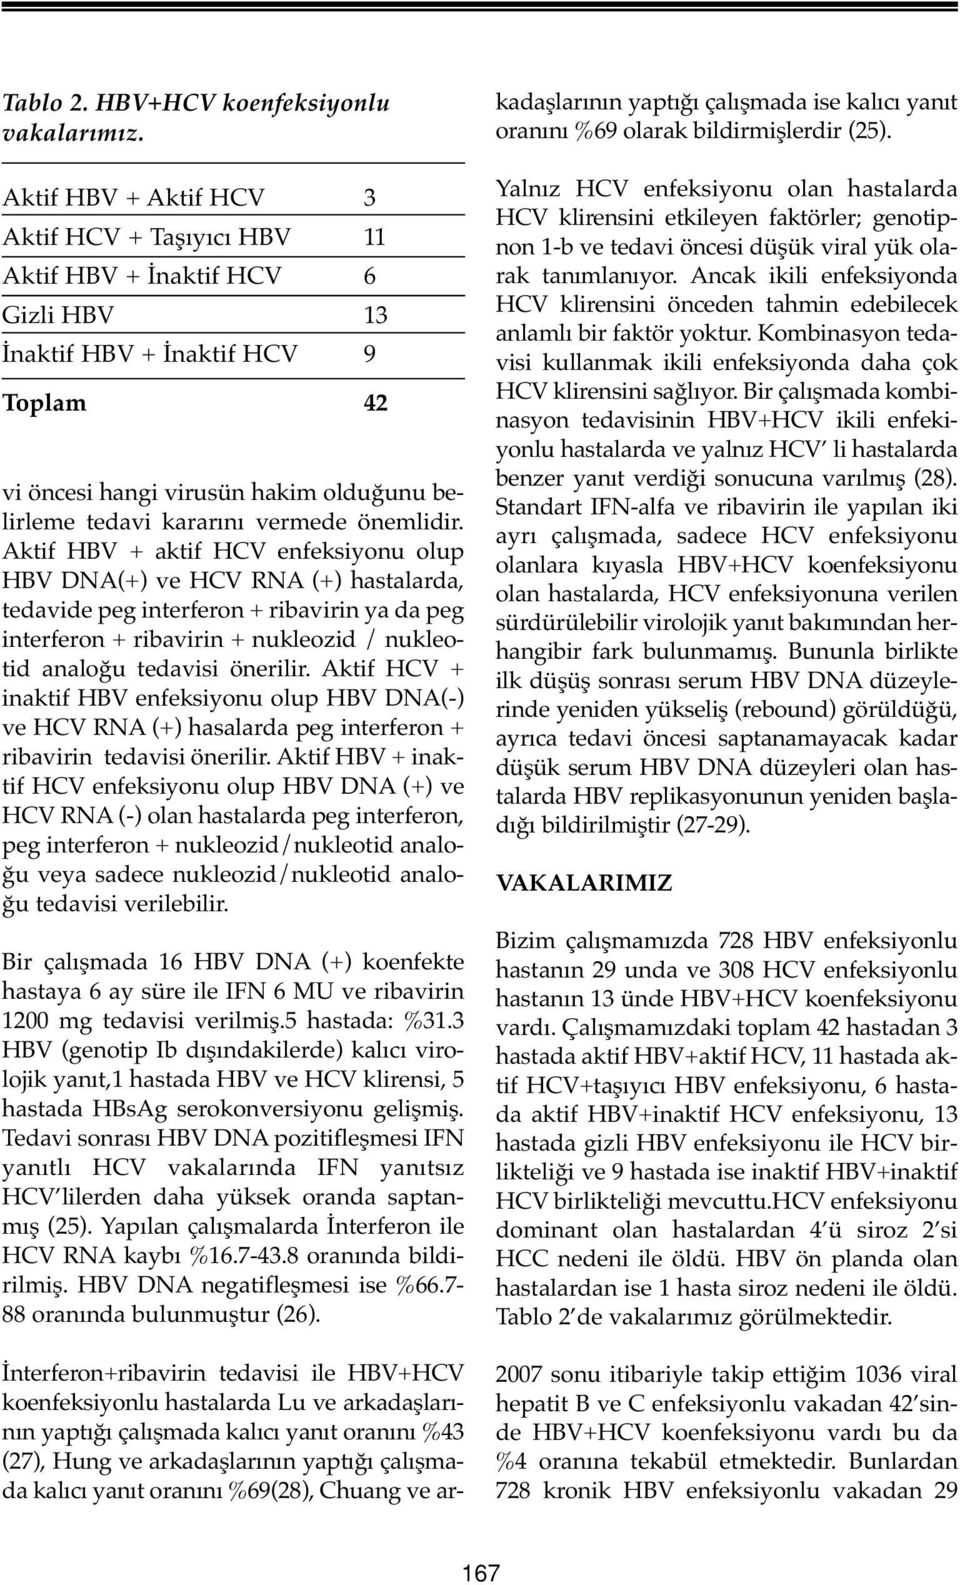 önemlidir. Aktif HBV aktif HCV enfeksiyonu olup HBV DNA() ve HCV RNA () hastalarda, tedavide peg interferon ribavirin ya da peg interferon ribavirin nukleozid / nukleotid analoğu tedavisi önerilir.